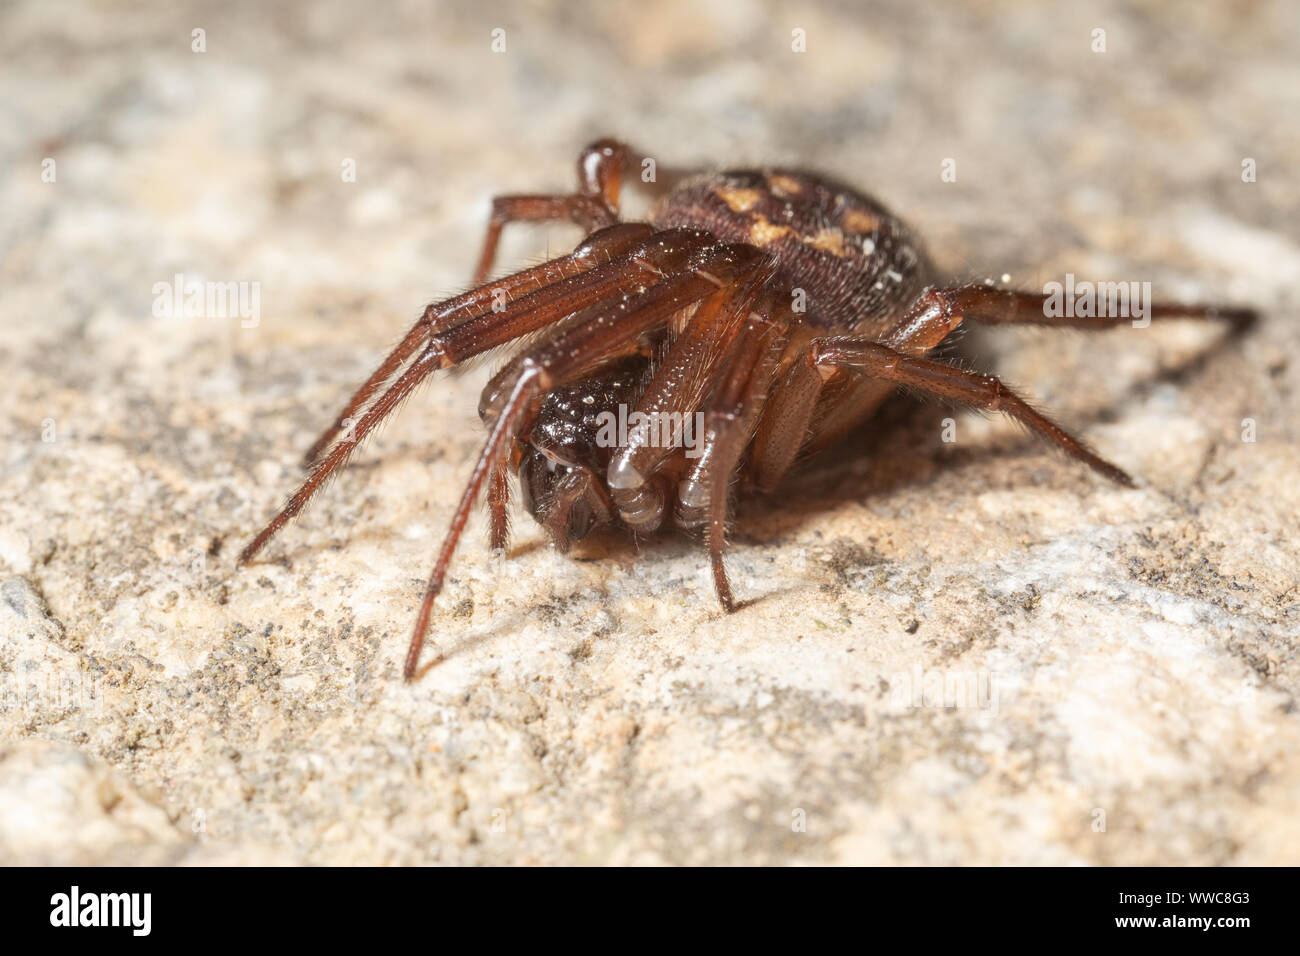 Femmina falsi nobili vedova spider - una specie che ha avuto una diffusa attenzione da parte dei media a causa del pericolo alledged che pone alle persone. Foto Stock